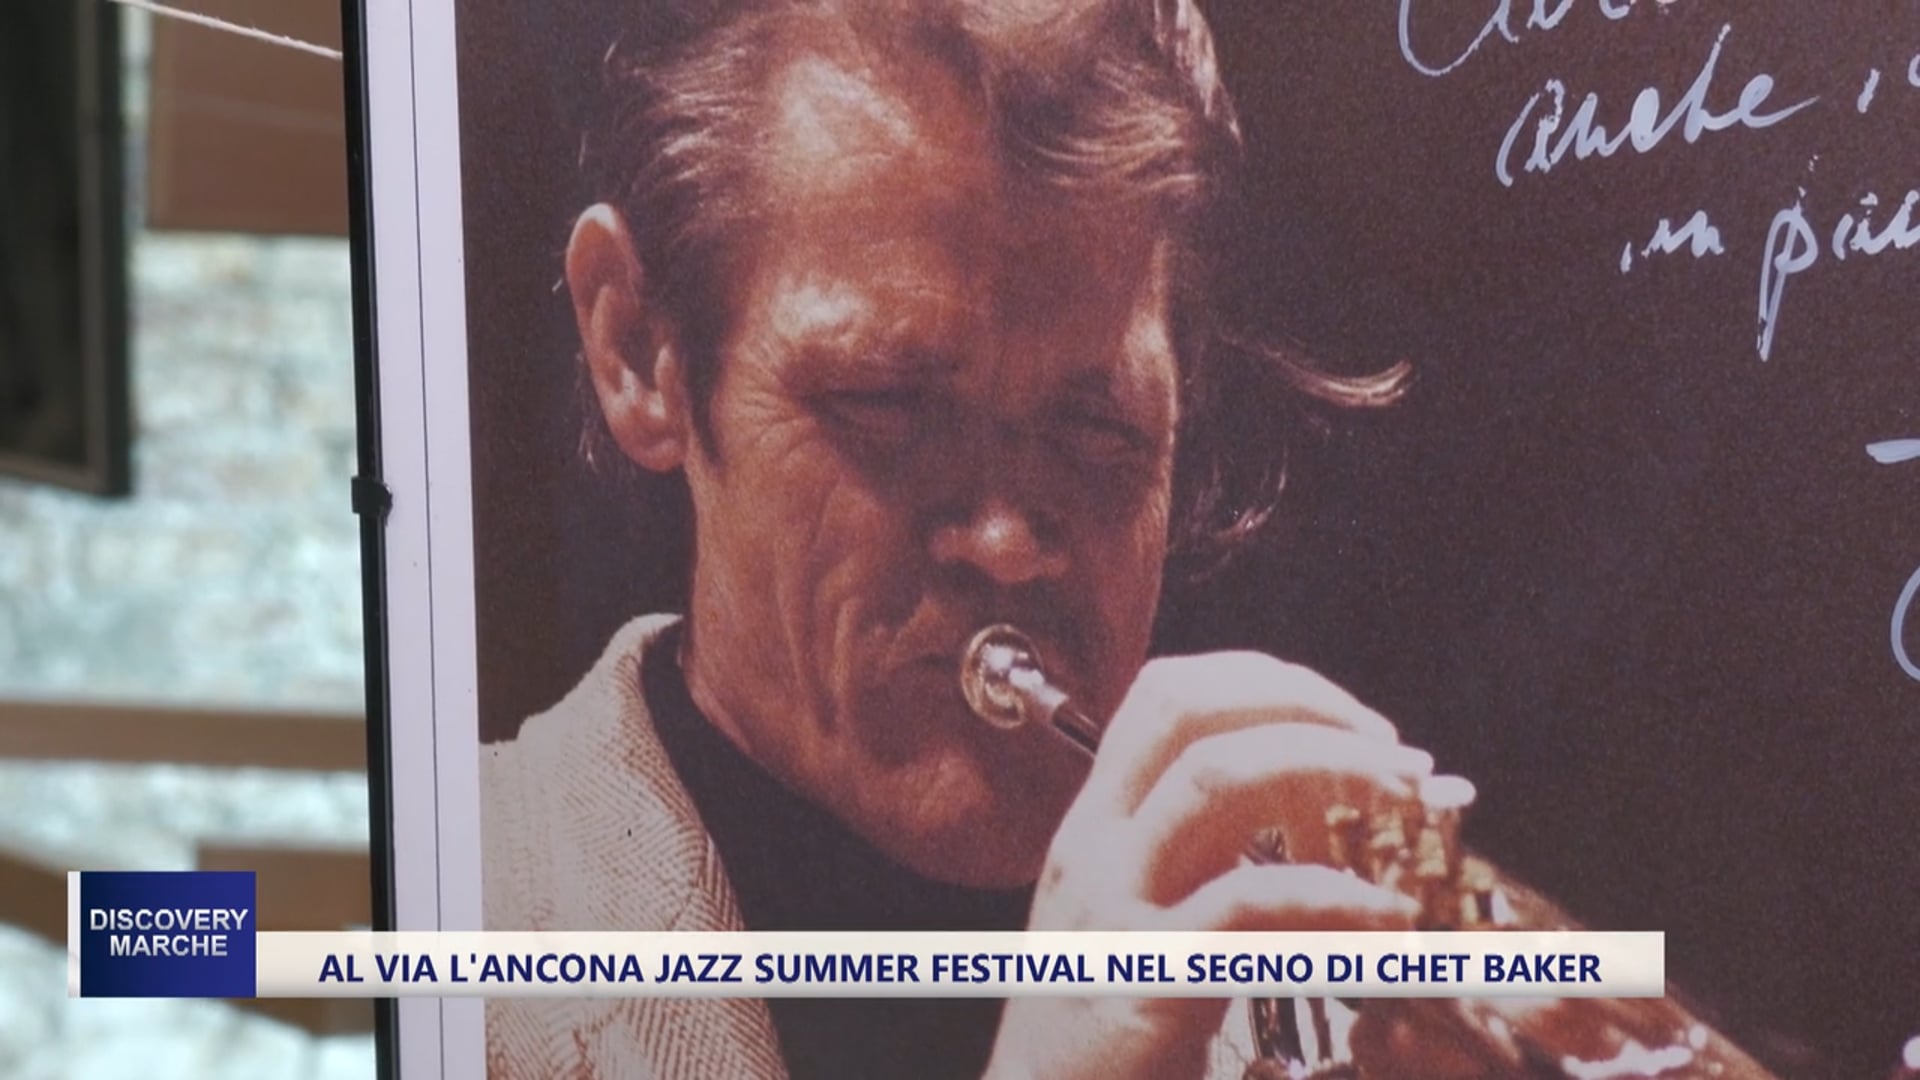 Al via l'Ancona Jazz Summer Festival nel segno di Chet Baker:  decine di eventi in città e tante esclusive  - VIDEO 